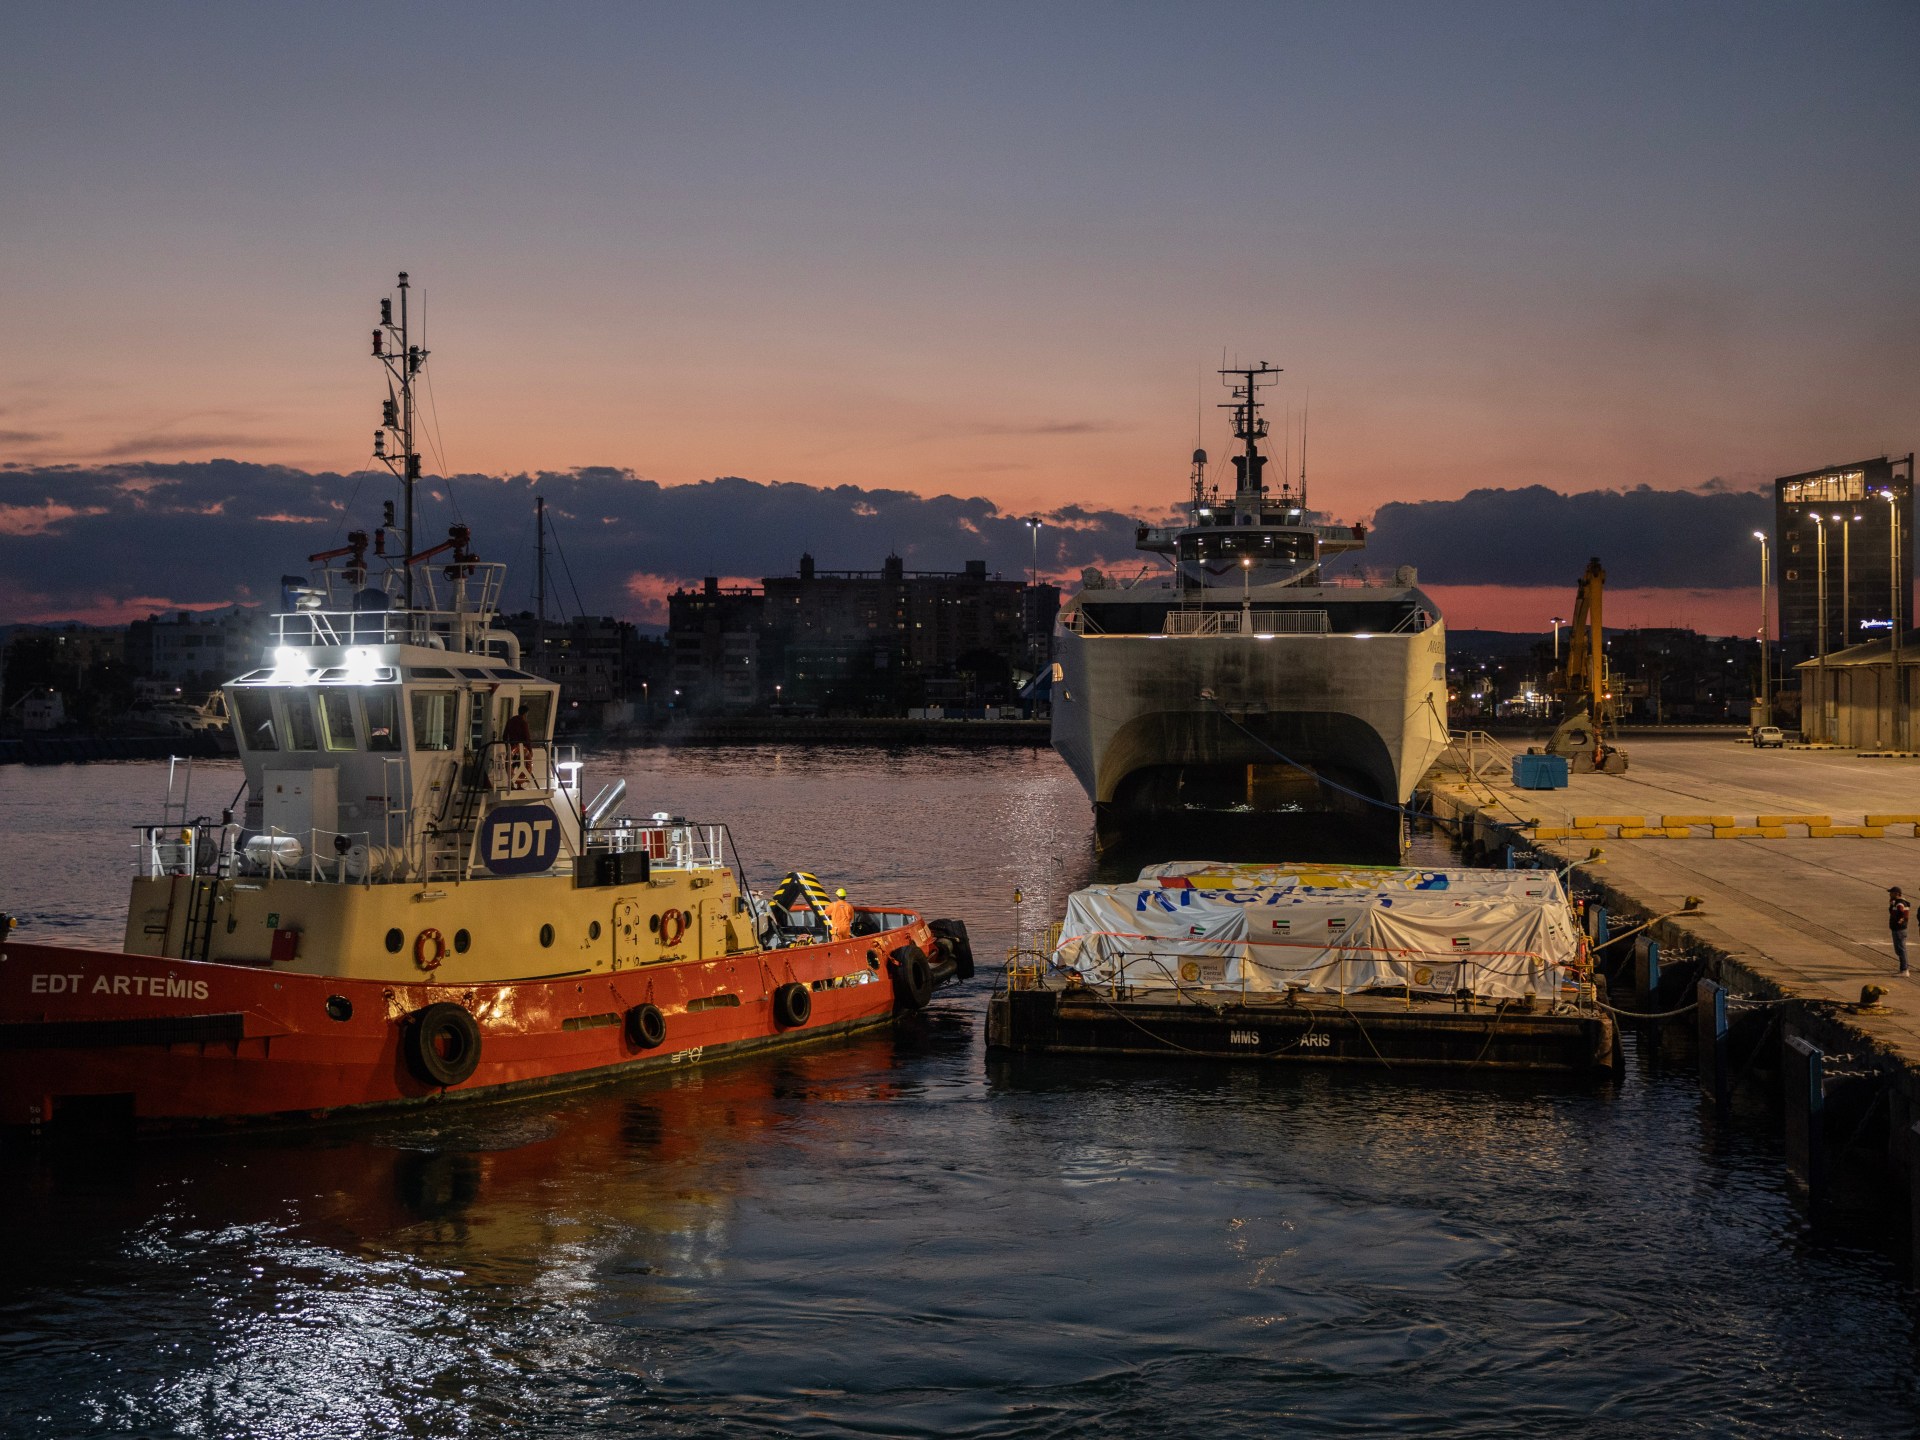 سفينة “الأذرع المفتوحة” تصل قرب شواطئ مدينة غزة محملة بالمساعدات | سياسة – البوكس نيوز